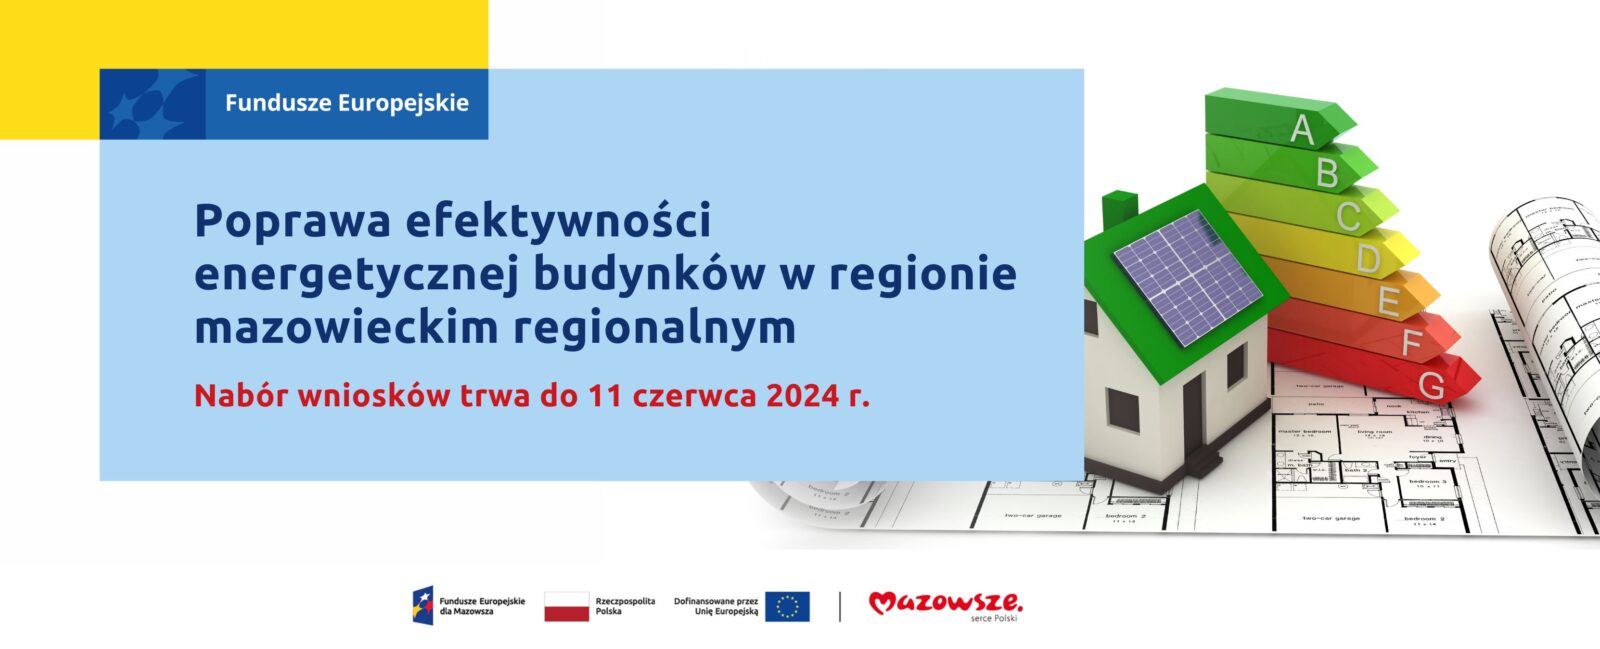 Na grafice znajduje się hasło: Fundusze Europejskie na poprawę efektywności energetycznej budynków w regionie mazowieckim regionalnym. Nabór wniosków trwa do 11 czerwca 2024 r.